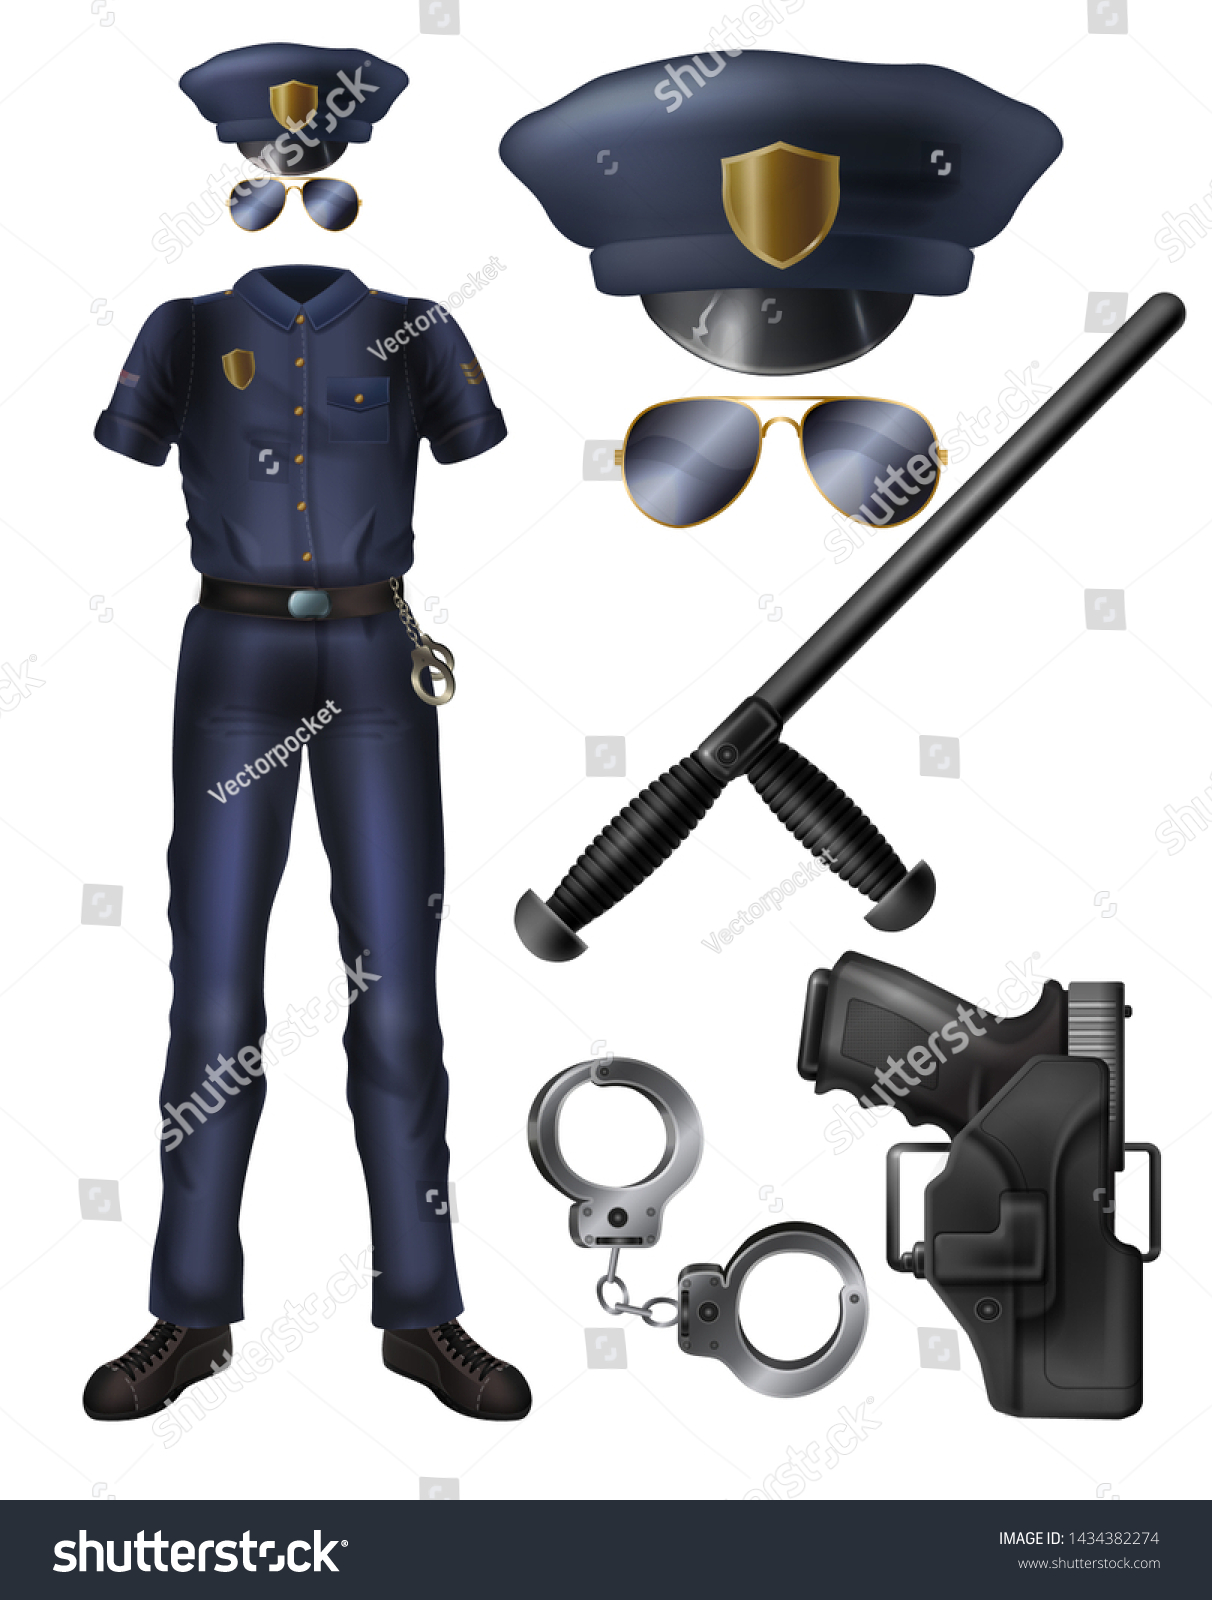 警察官 または警備員の制服 武器 アクセサリーのカートーンベクター画像セット 警官の衣装 ピークのとがった帽子 サングラス ホルスターのハンドガン 手錠 ゴム製のバトン 分離 イラスト のベクター画像素材 ロイヤリティフリー